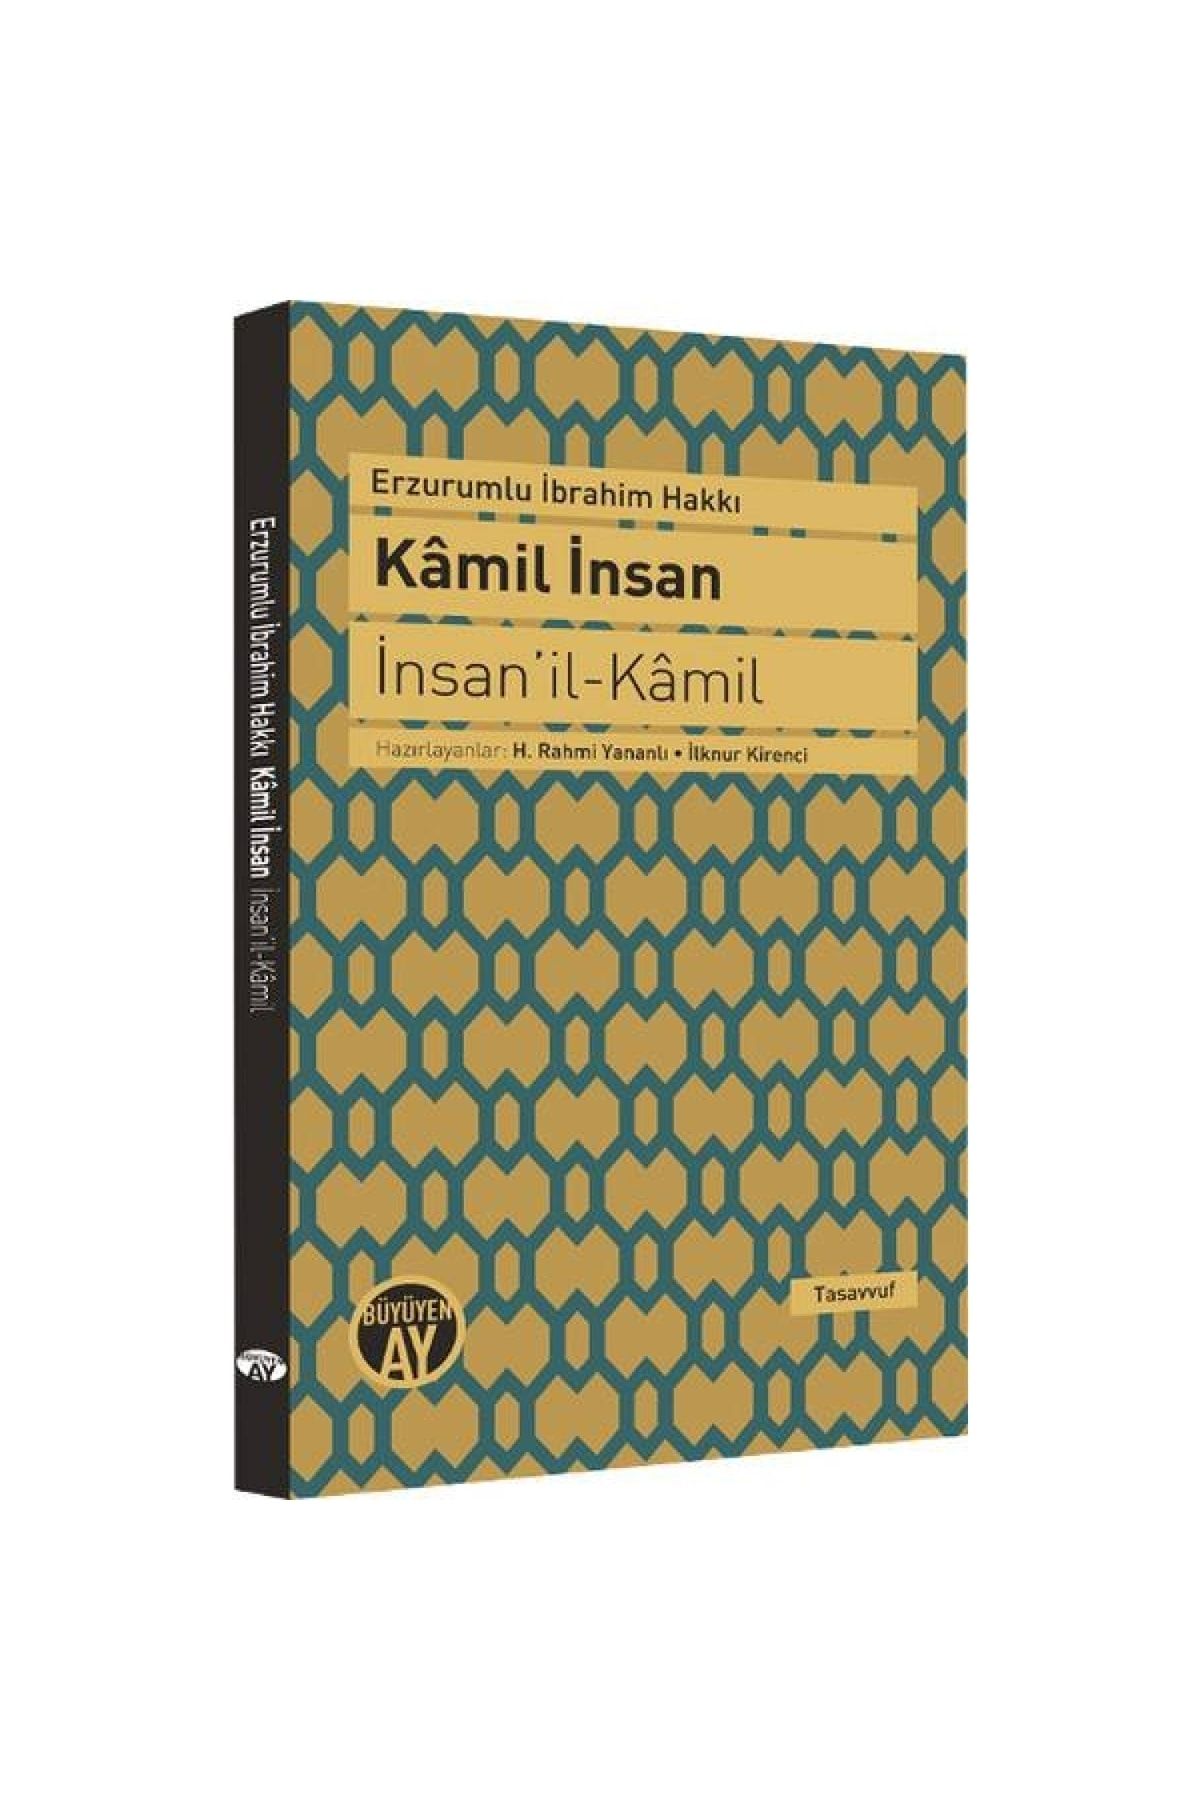 Büyüyen Ay Yayınları Kamil Insan / Insan'il Kamil